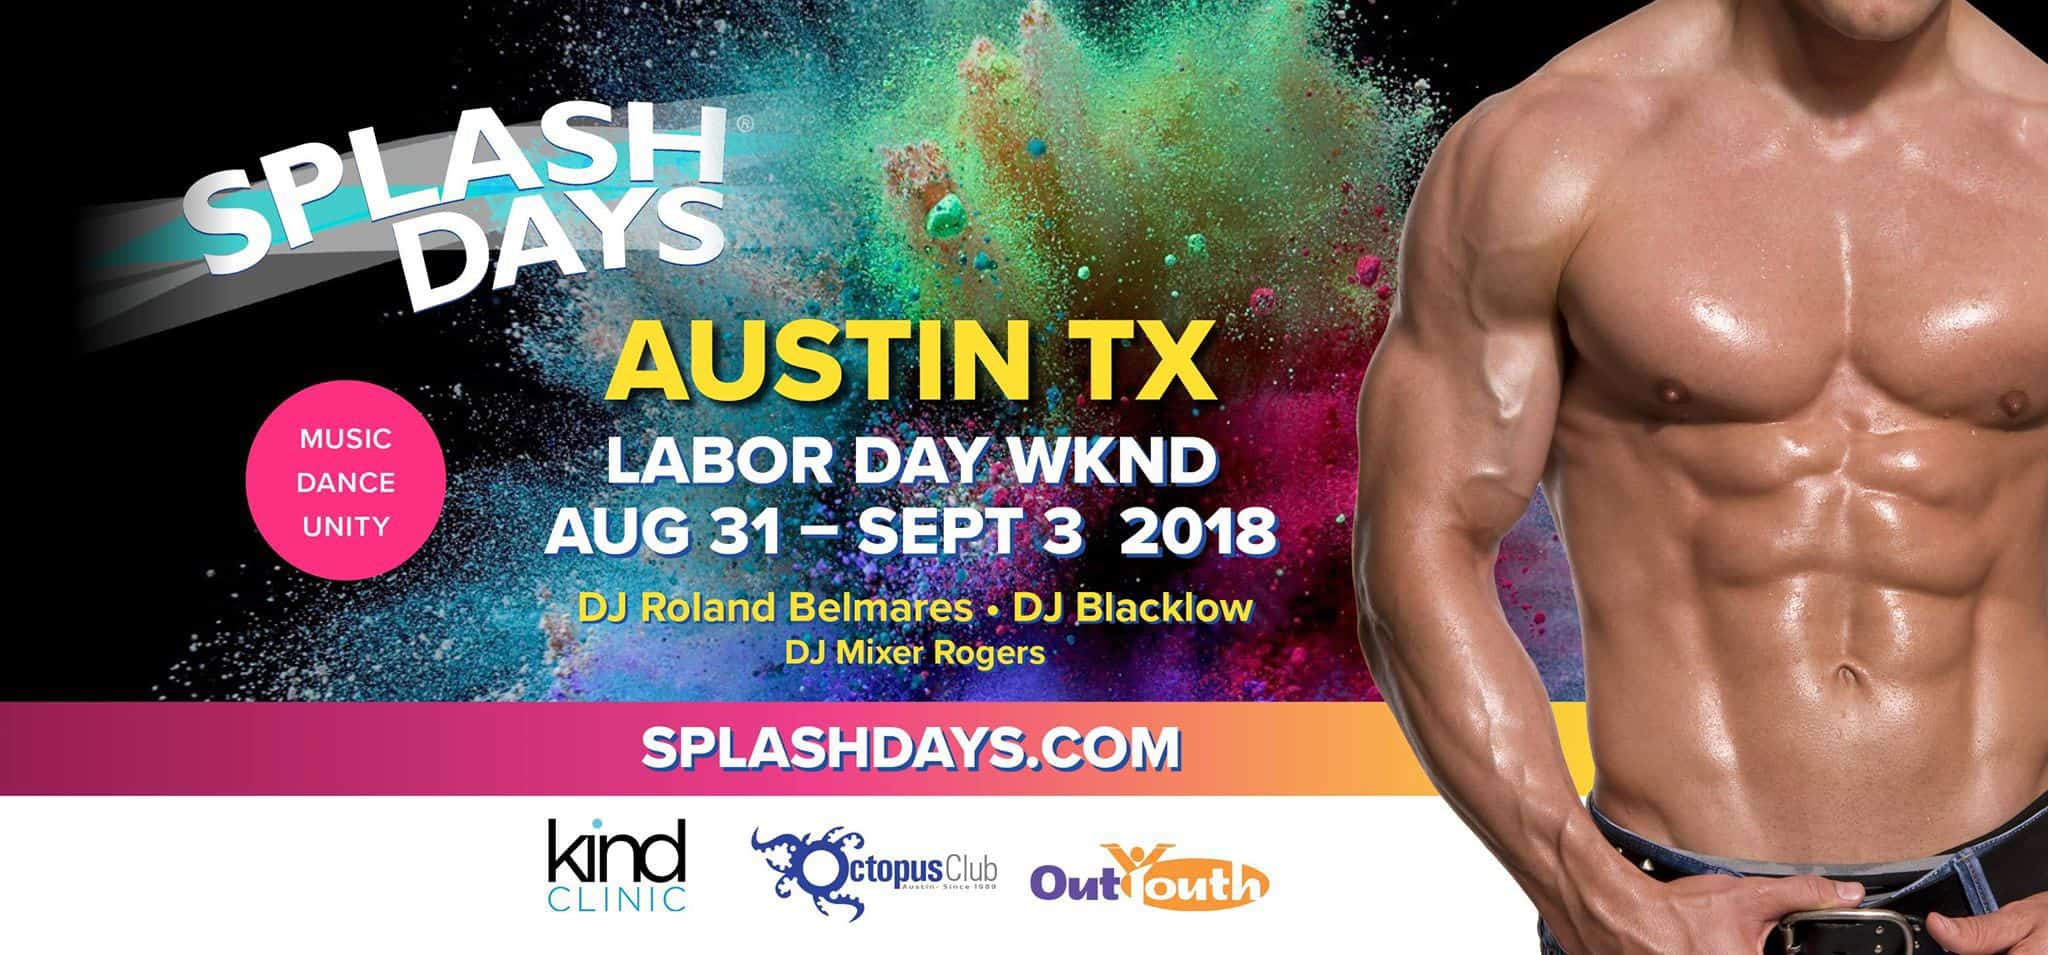 Splashdagen 2018 Austin